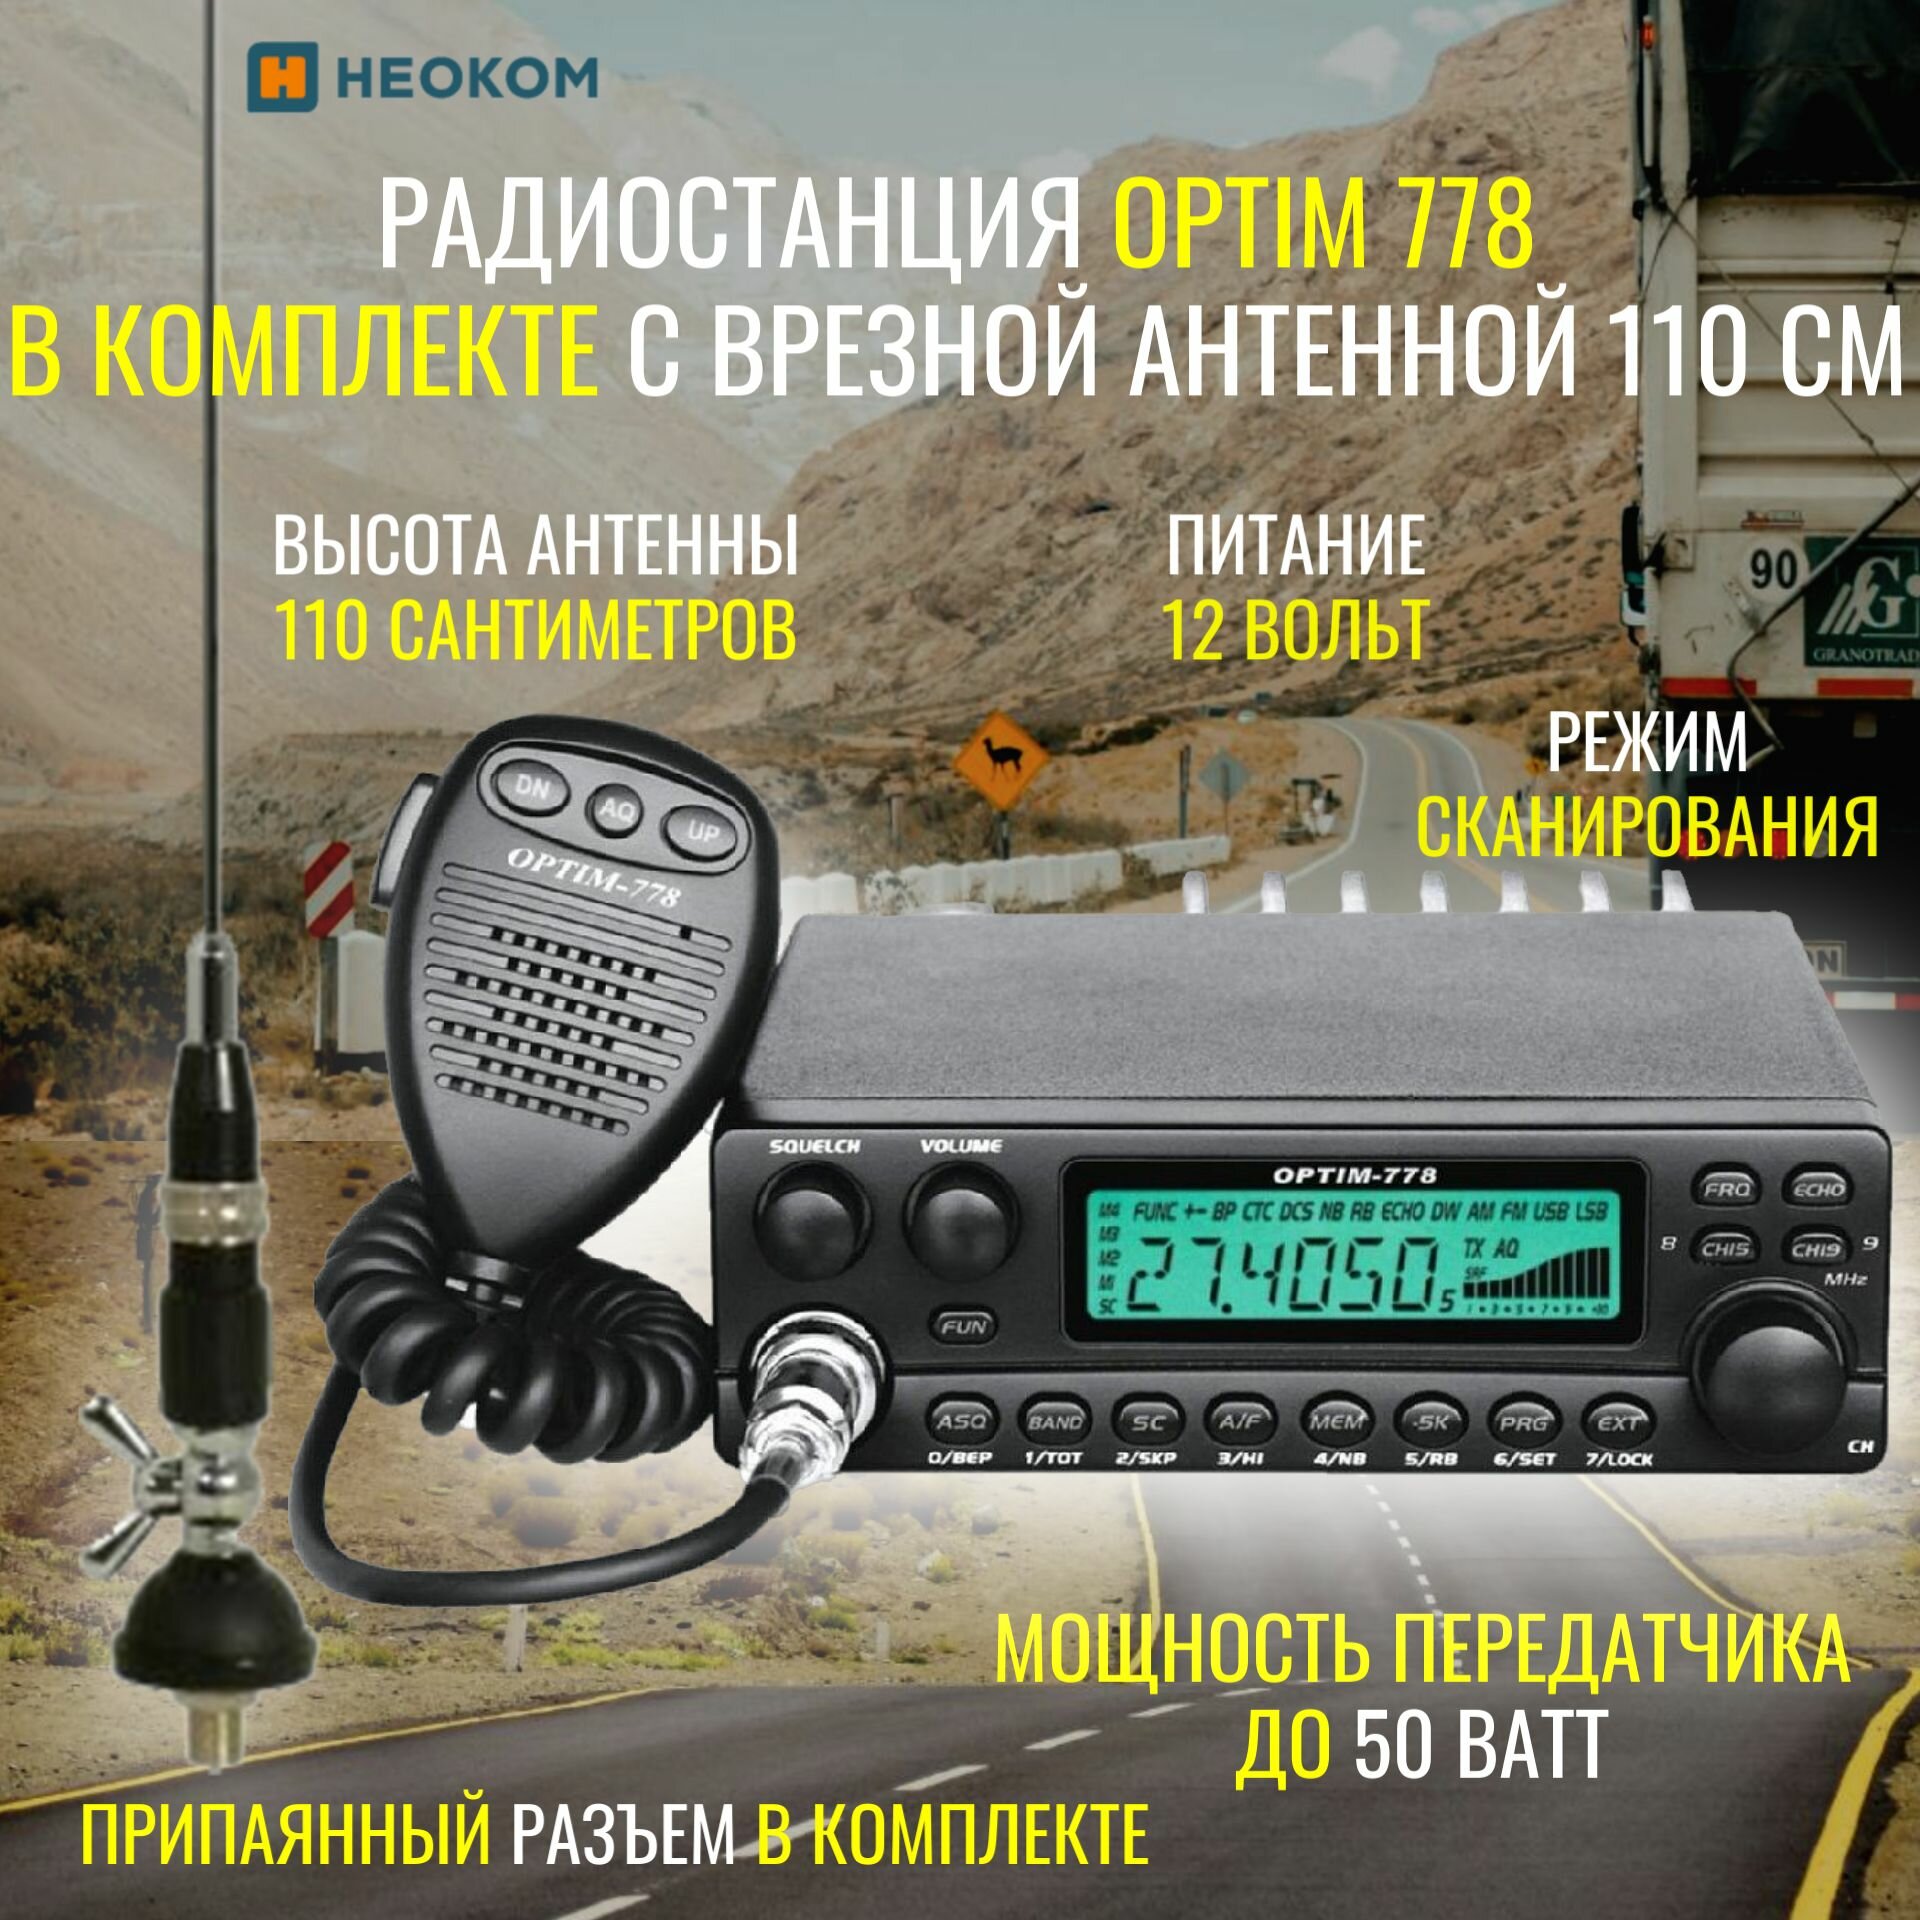 Автомобильная радиостанция Optim 778 в комплекте с врезной антенной 1,1 метра и припаянным разъемом PL-259